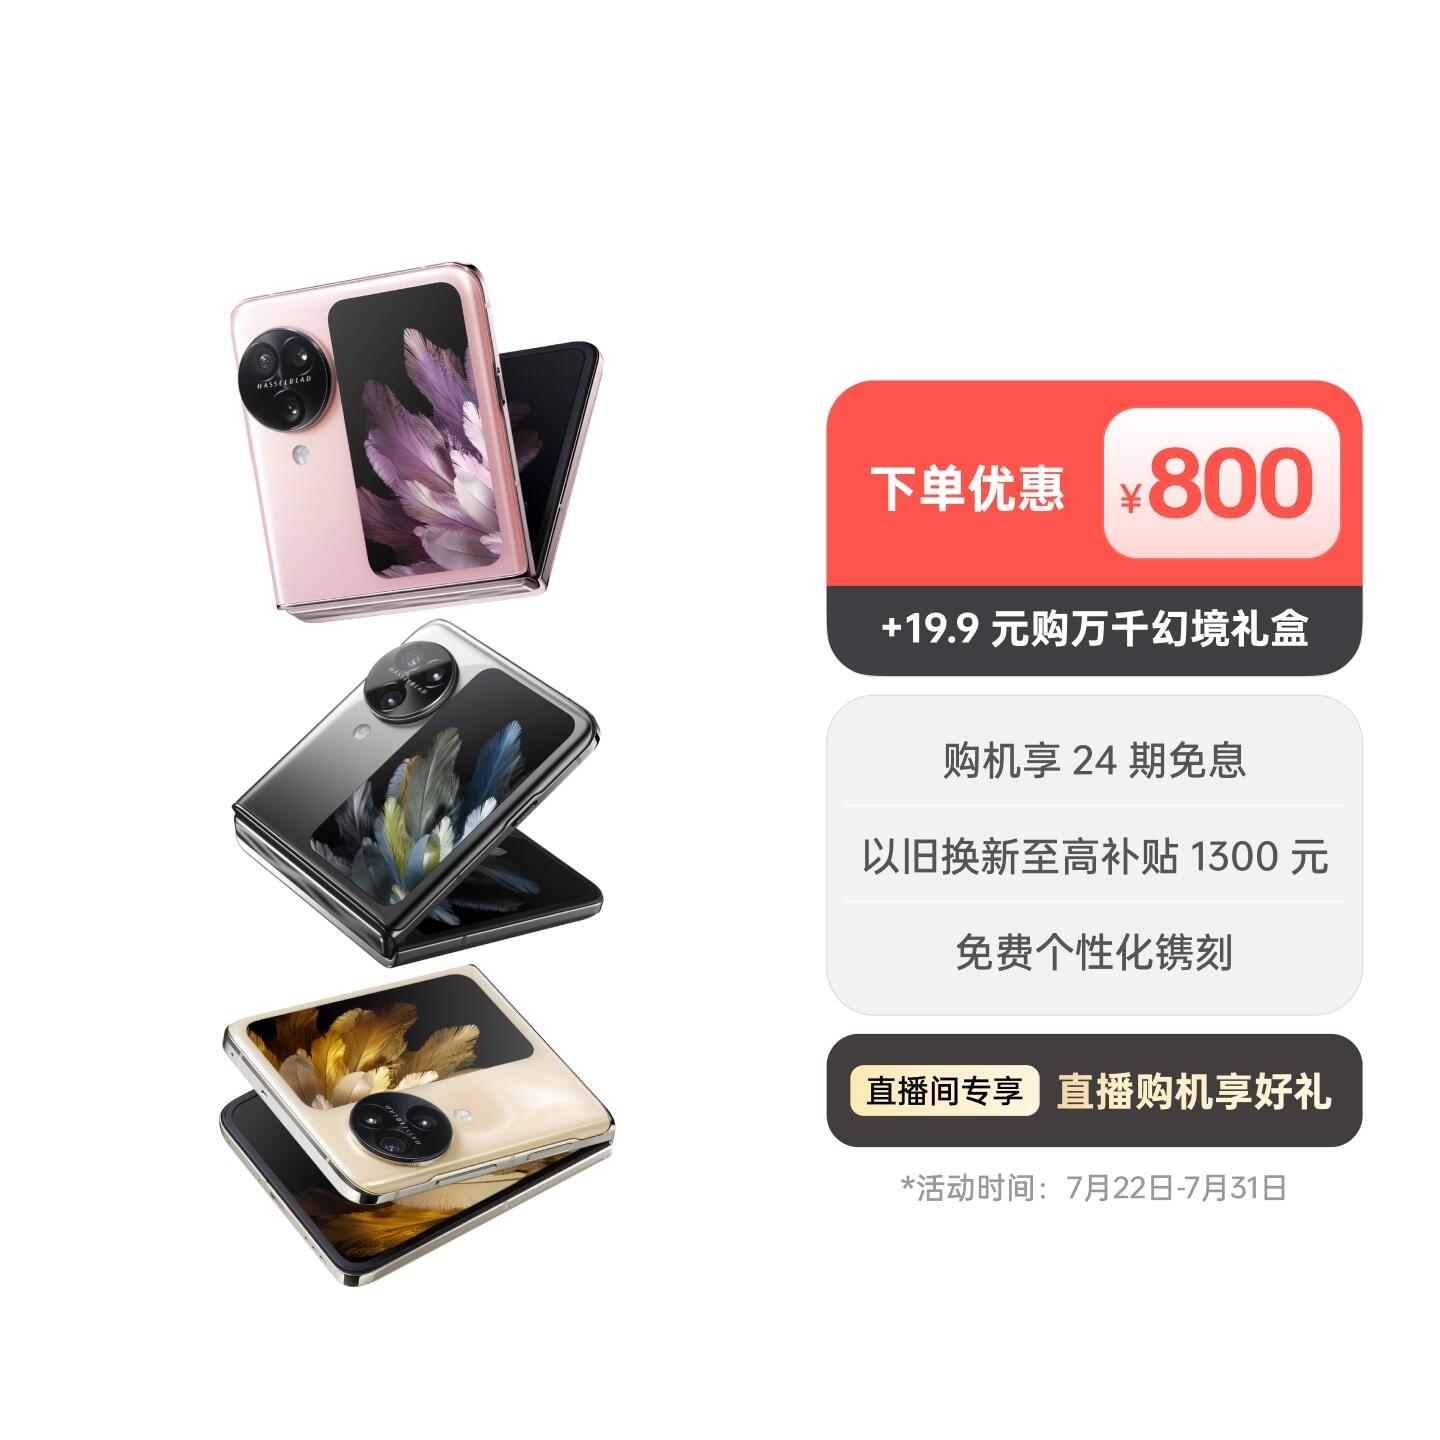 OPPO Find N3 Flip AI手机 月光缪斯 12GB+256GB +19.9 元购「万千幻境」礼盒